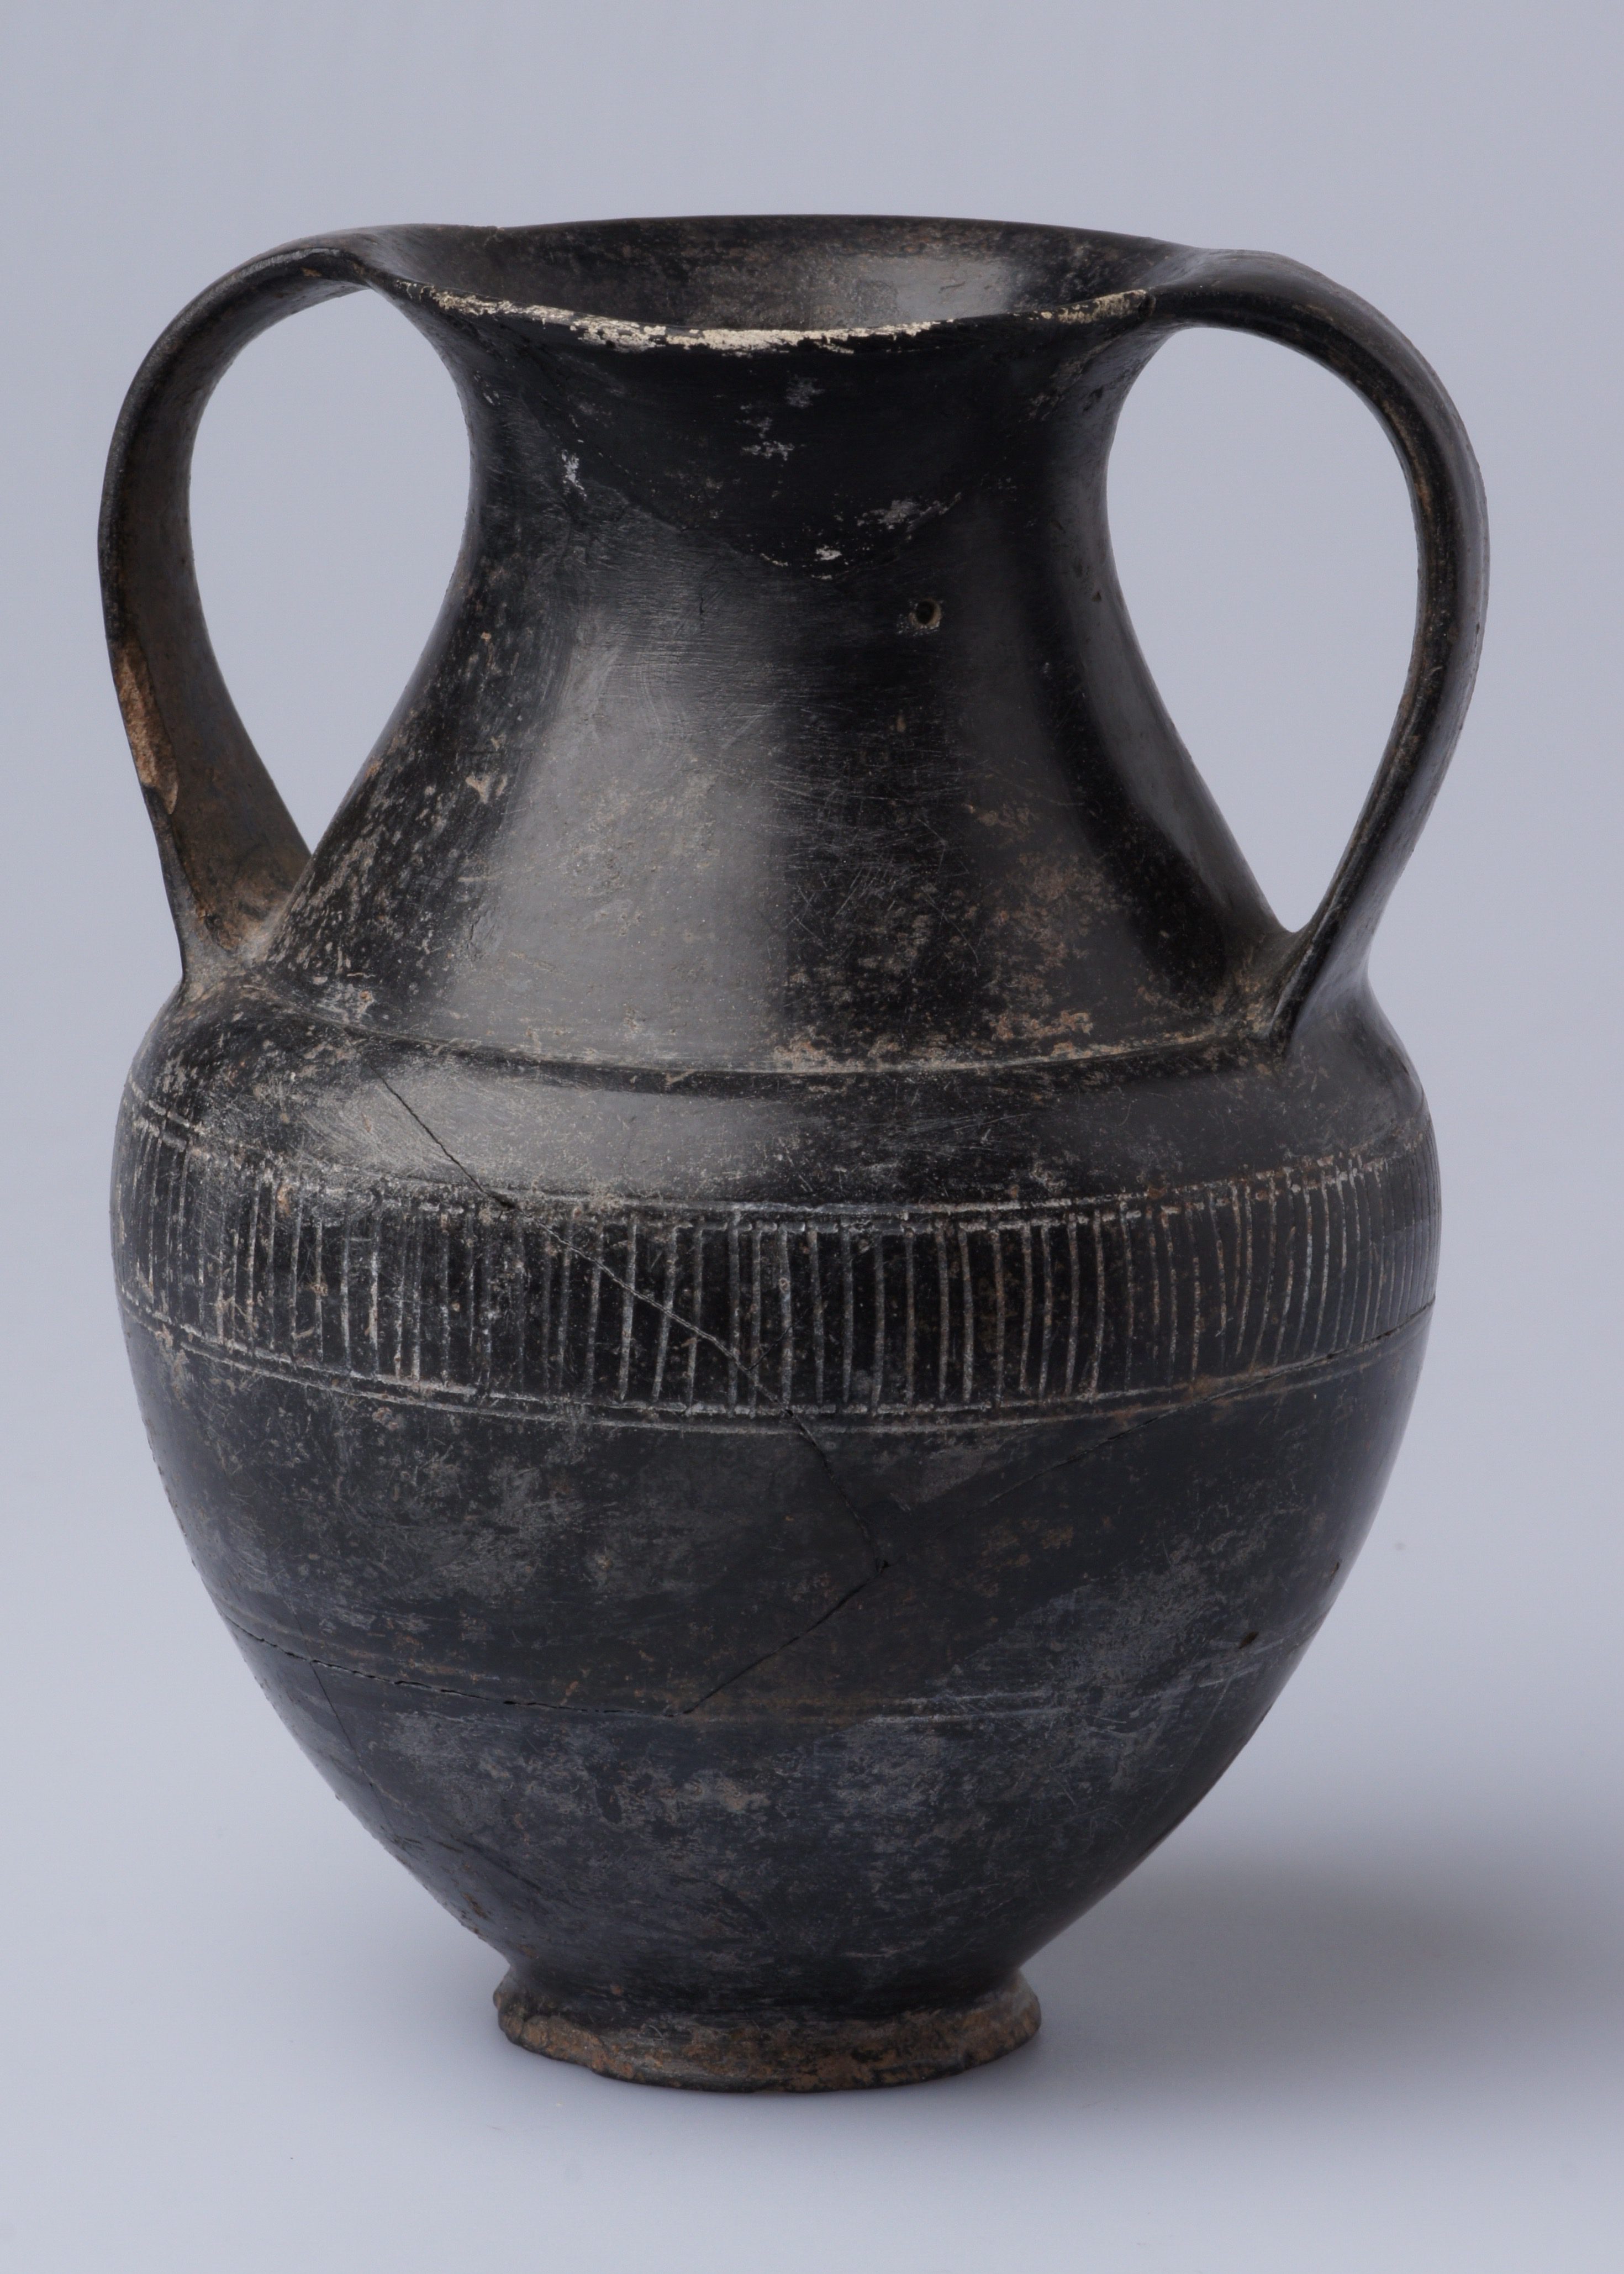 Etruscan ceramics after restoration